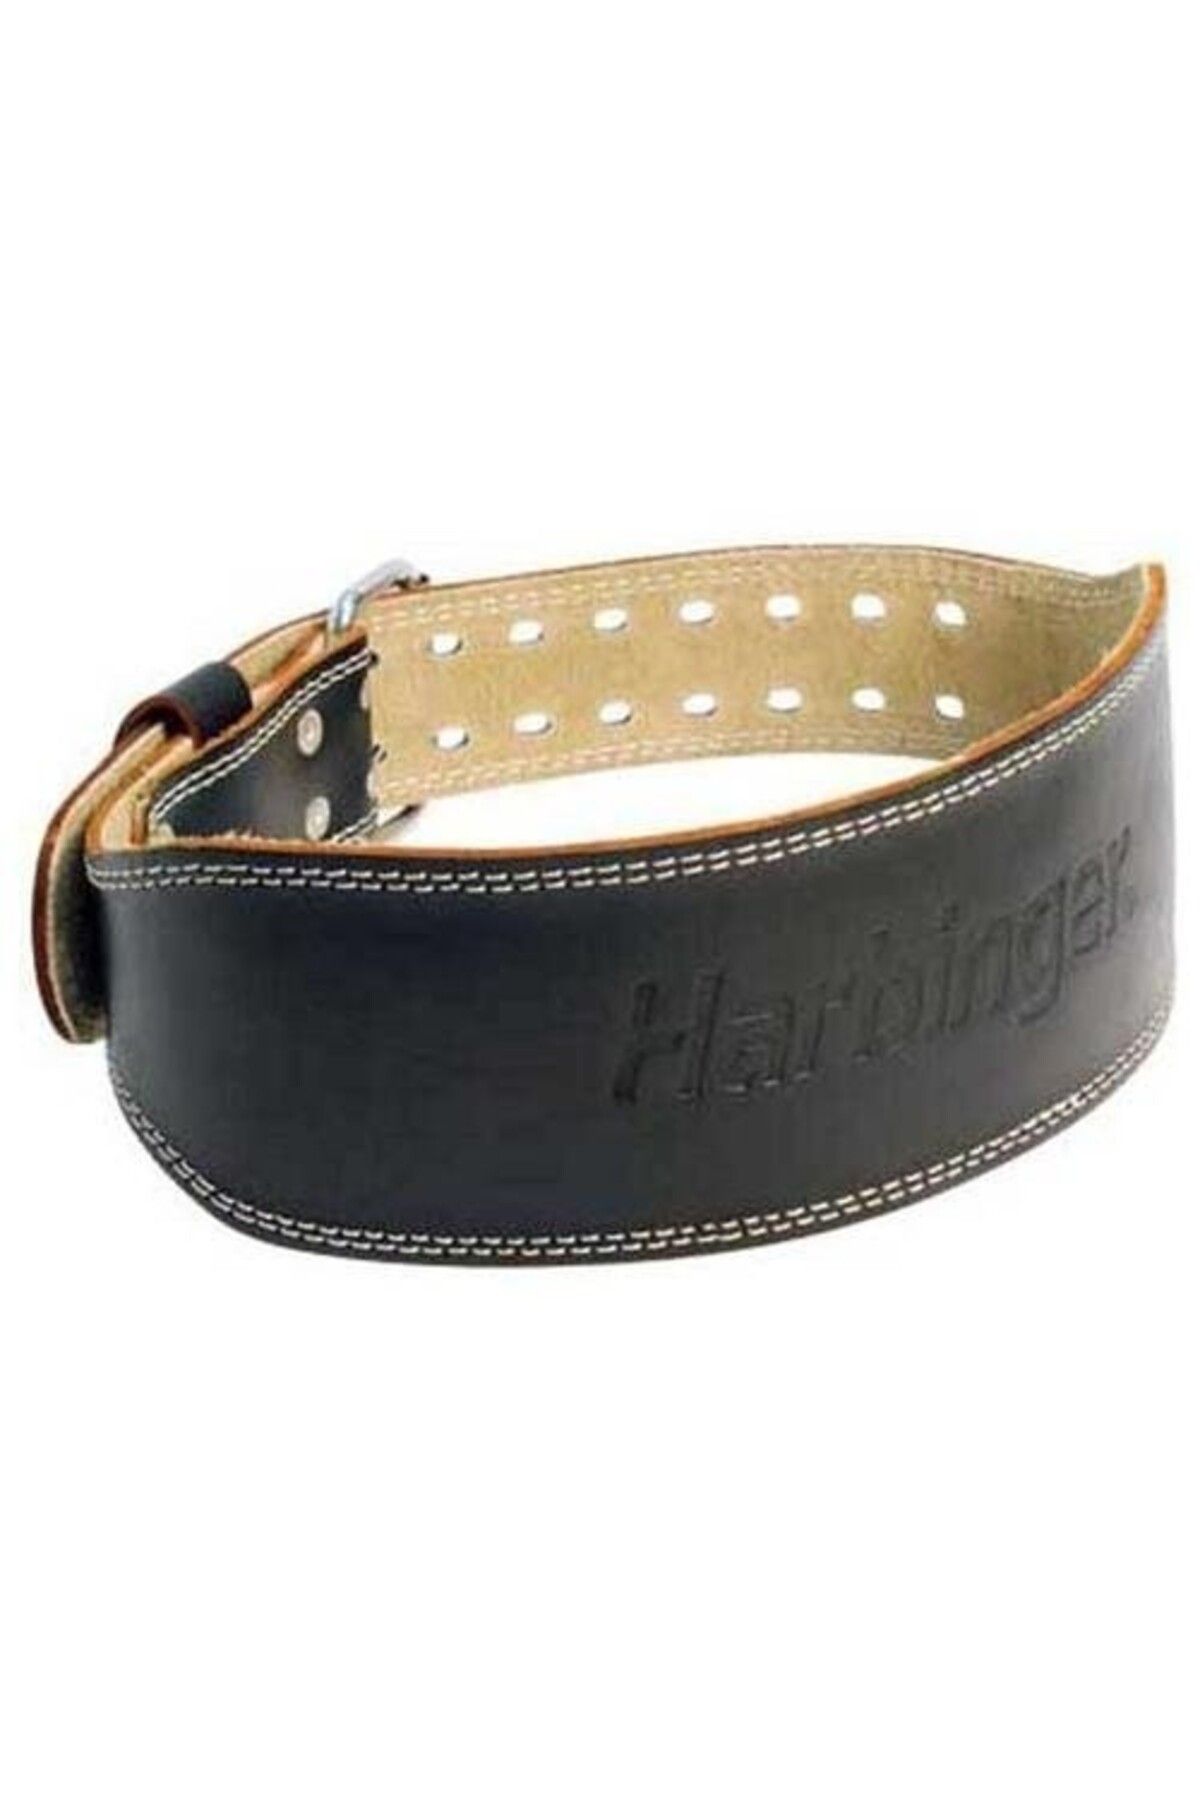 Harbinger 4 Padded Leather Belt Ağırlık Kemeri M